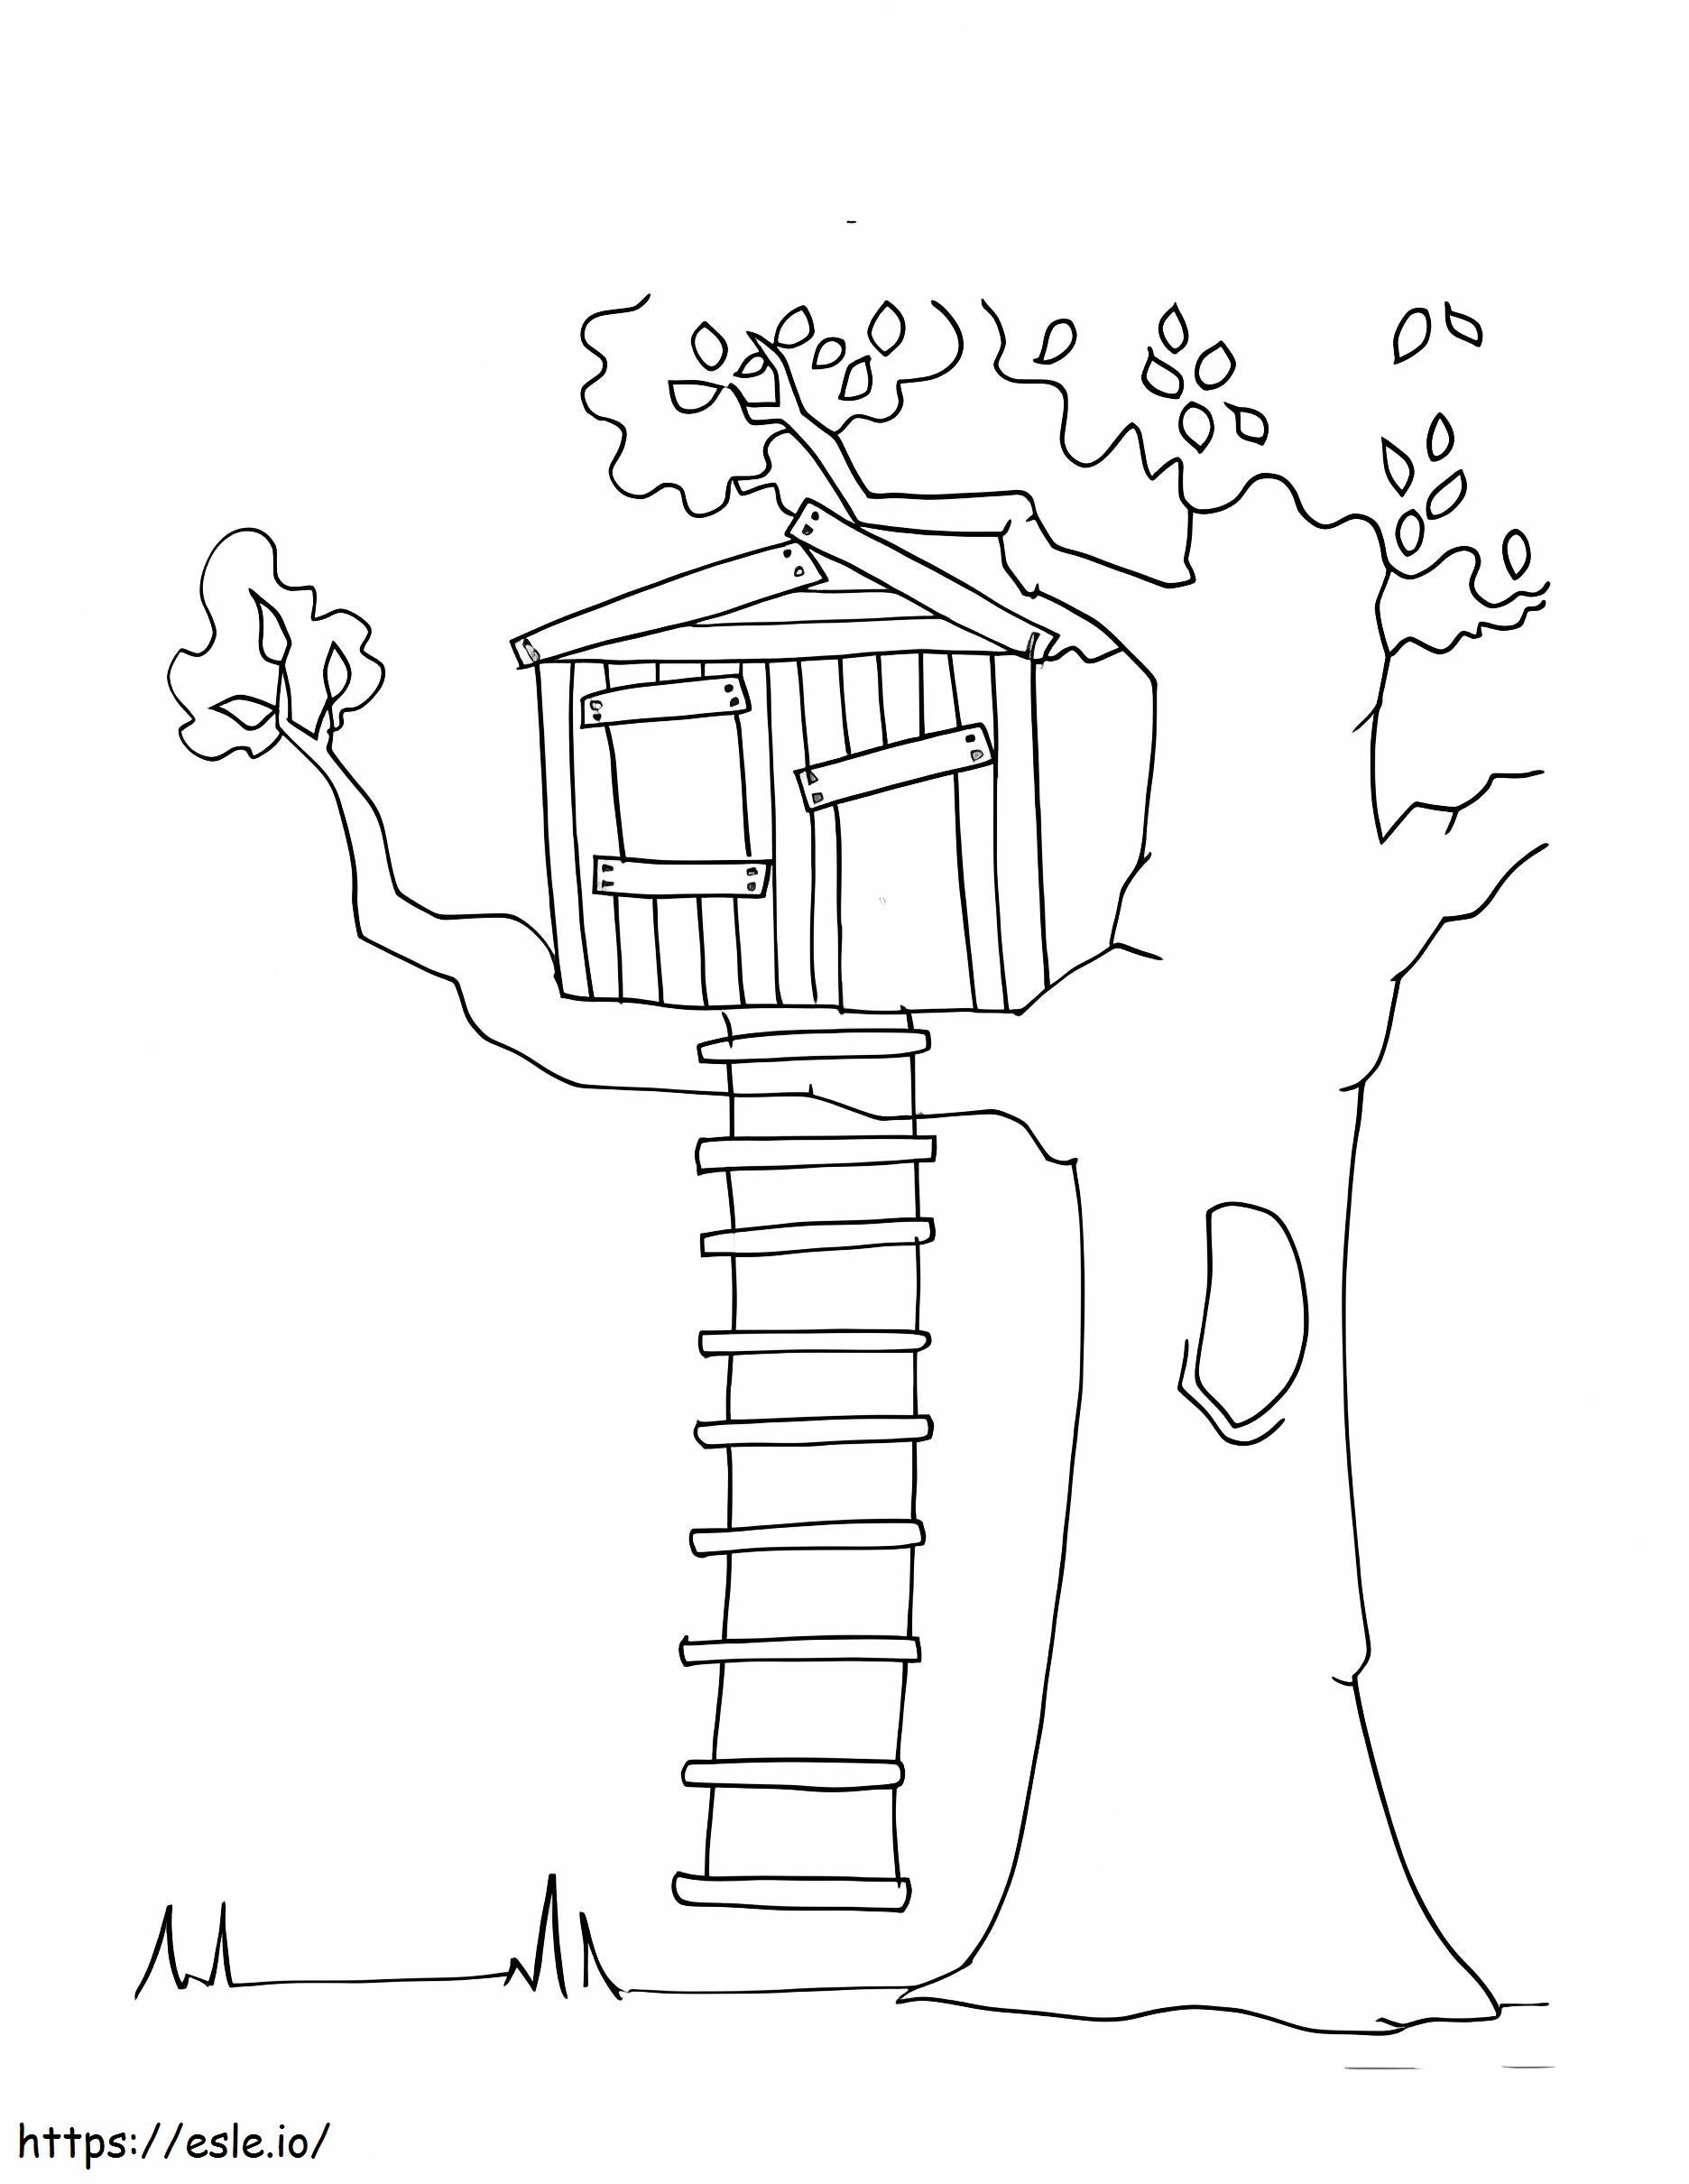 Ağaç Evime Tırman boyama